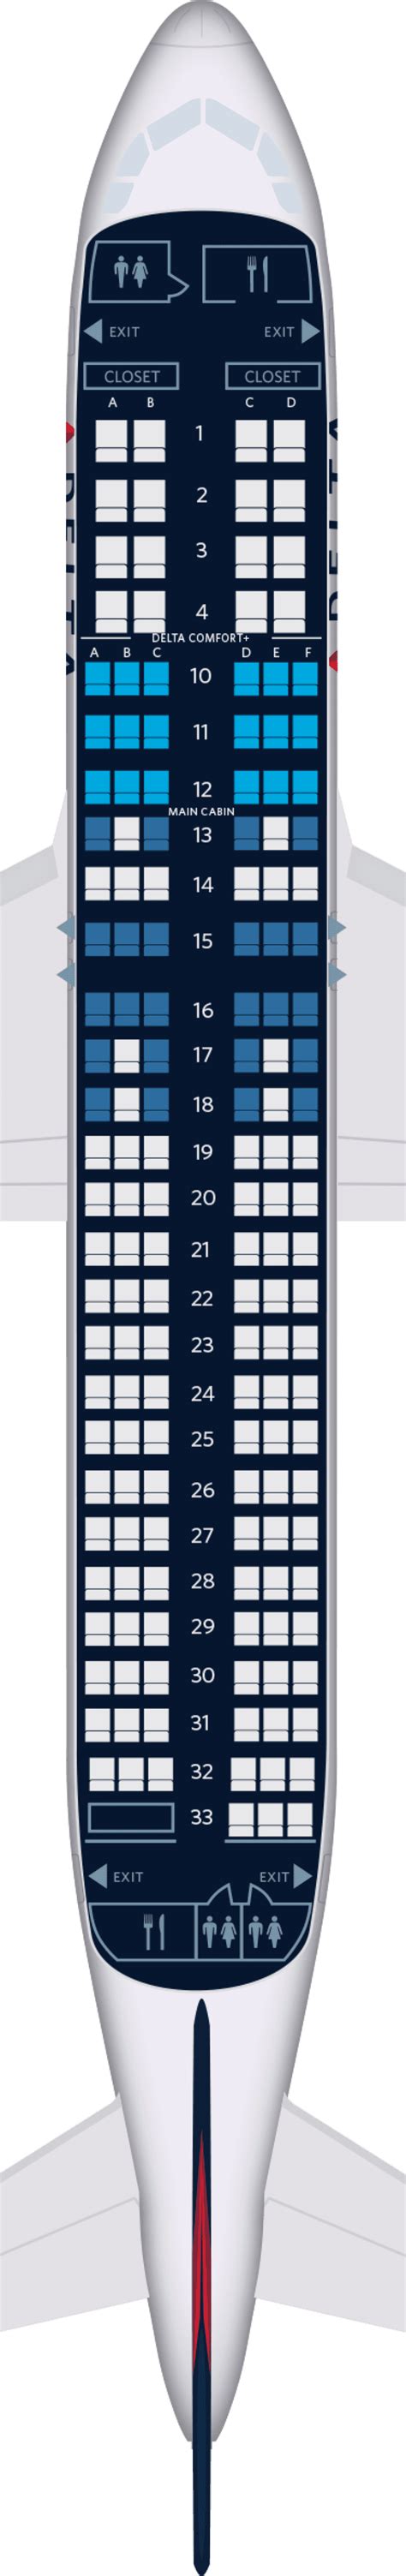 Airbus A Azul Mapa De Assentos Image To U